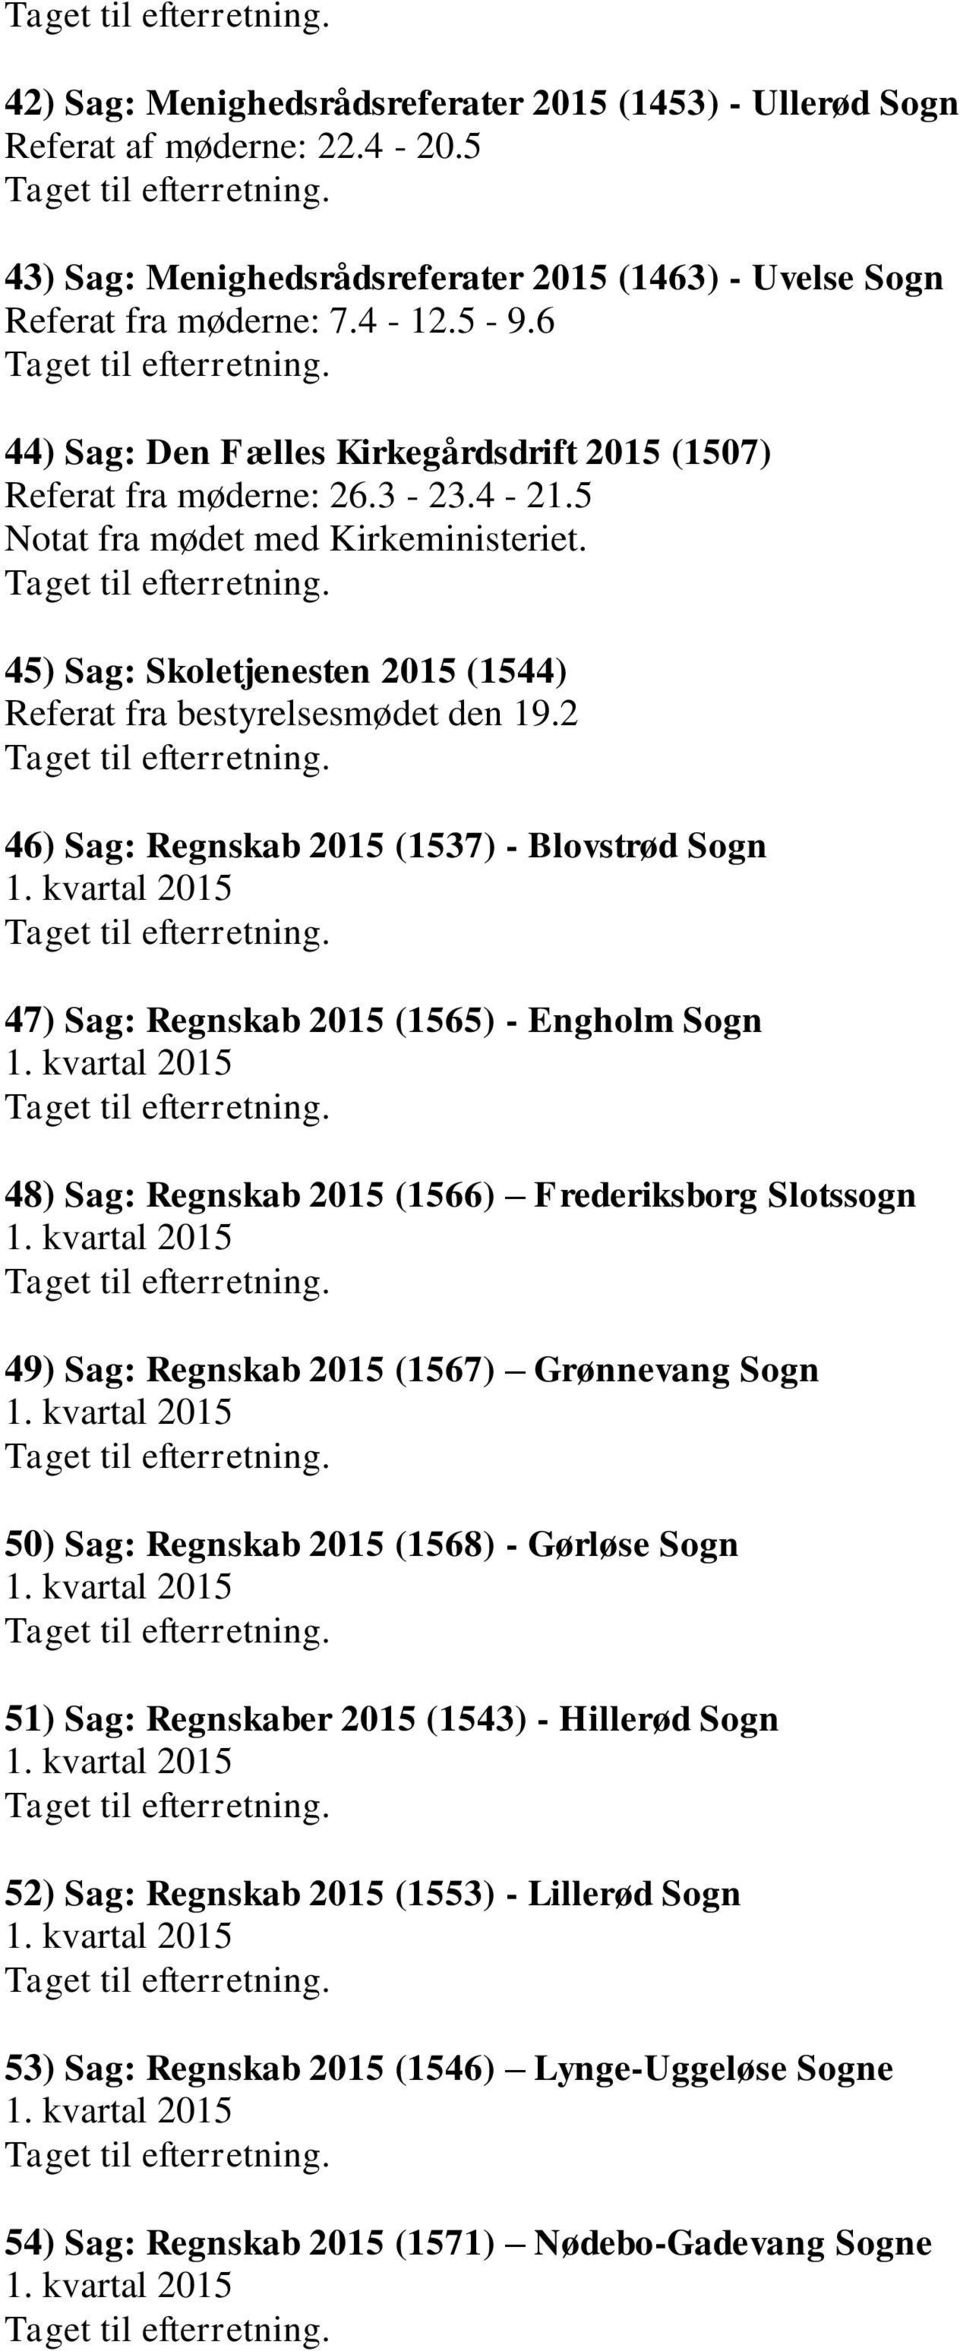 2 46) Sag: Regnskab 2015 (1537) - Blovstrød Sogn 47) Sag: Regnskab 2015 (1565) - Engholm Sogn 48) Sag: Regnskab 2015 (1566) Frederiksborg Slotssogn 49) Sag: Regnskab 2015 (1567) Grønnevang Sogn 50)